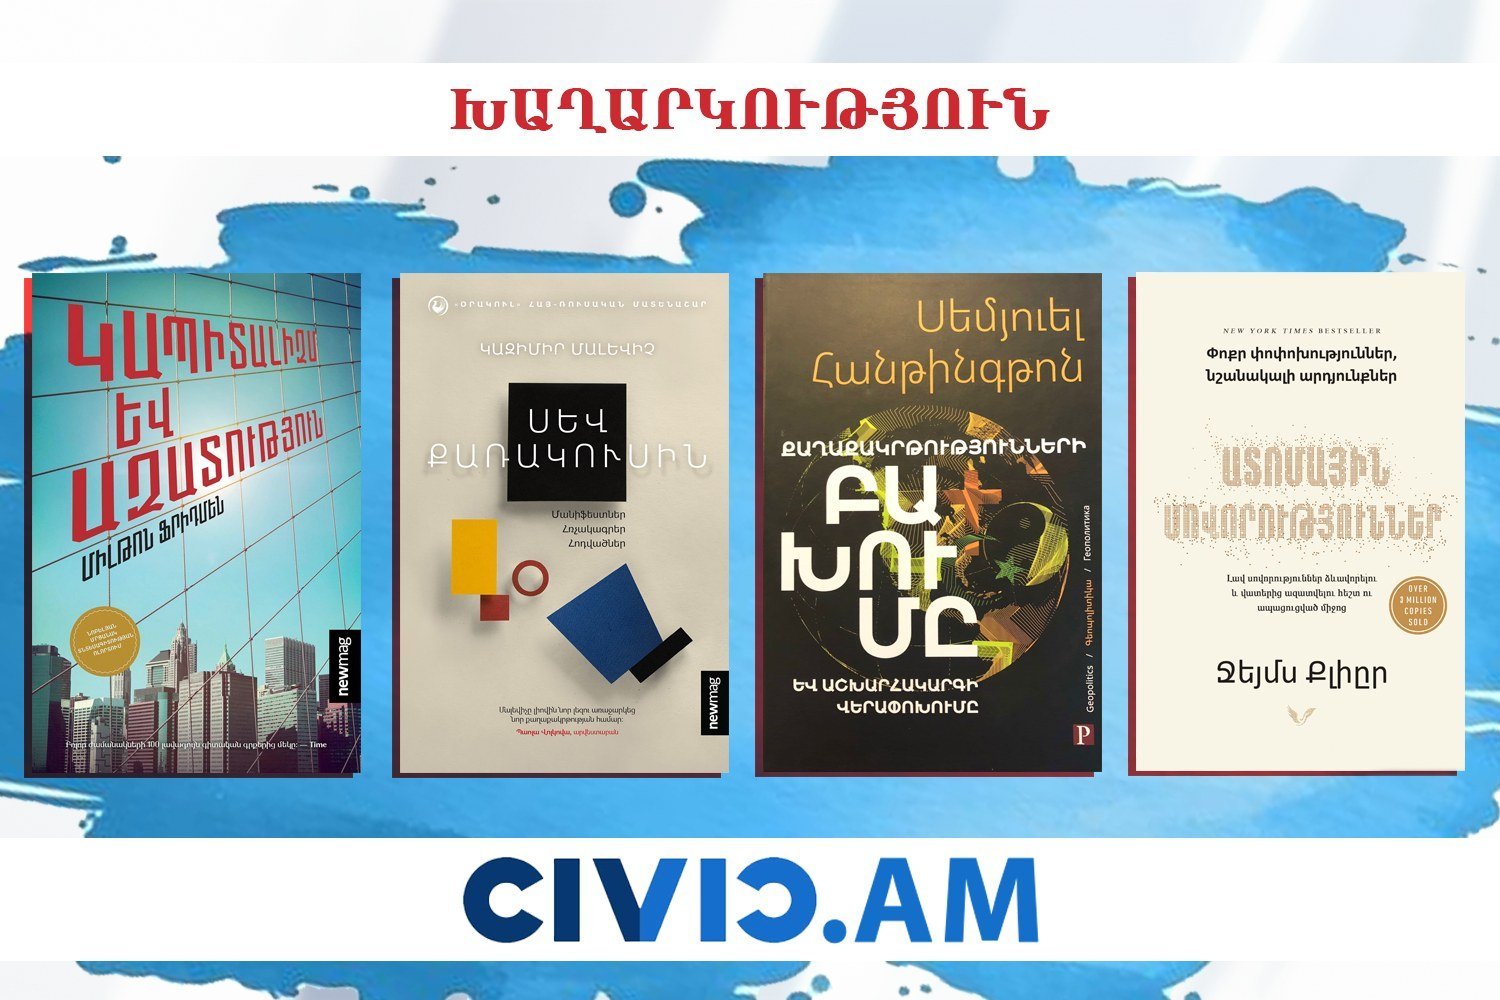 Հայտնի են Civic.am լրատվականի «Նվիրիր գիրք» խաղարկության հաղթողները